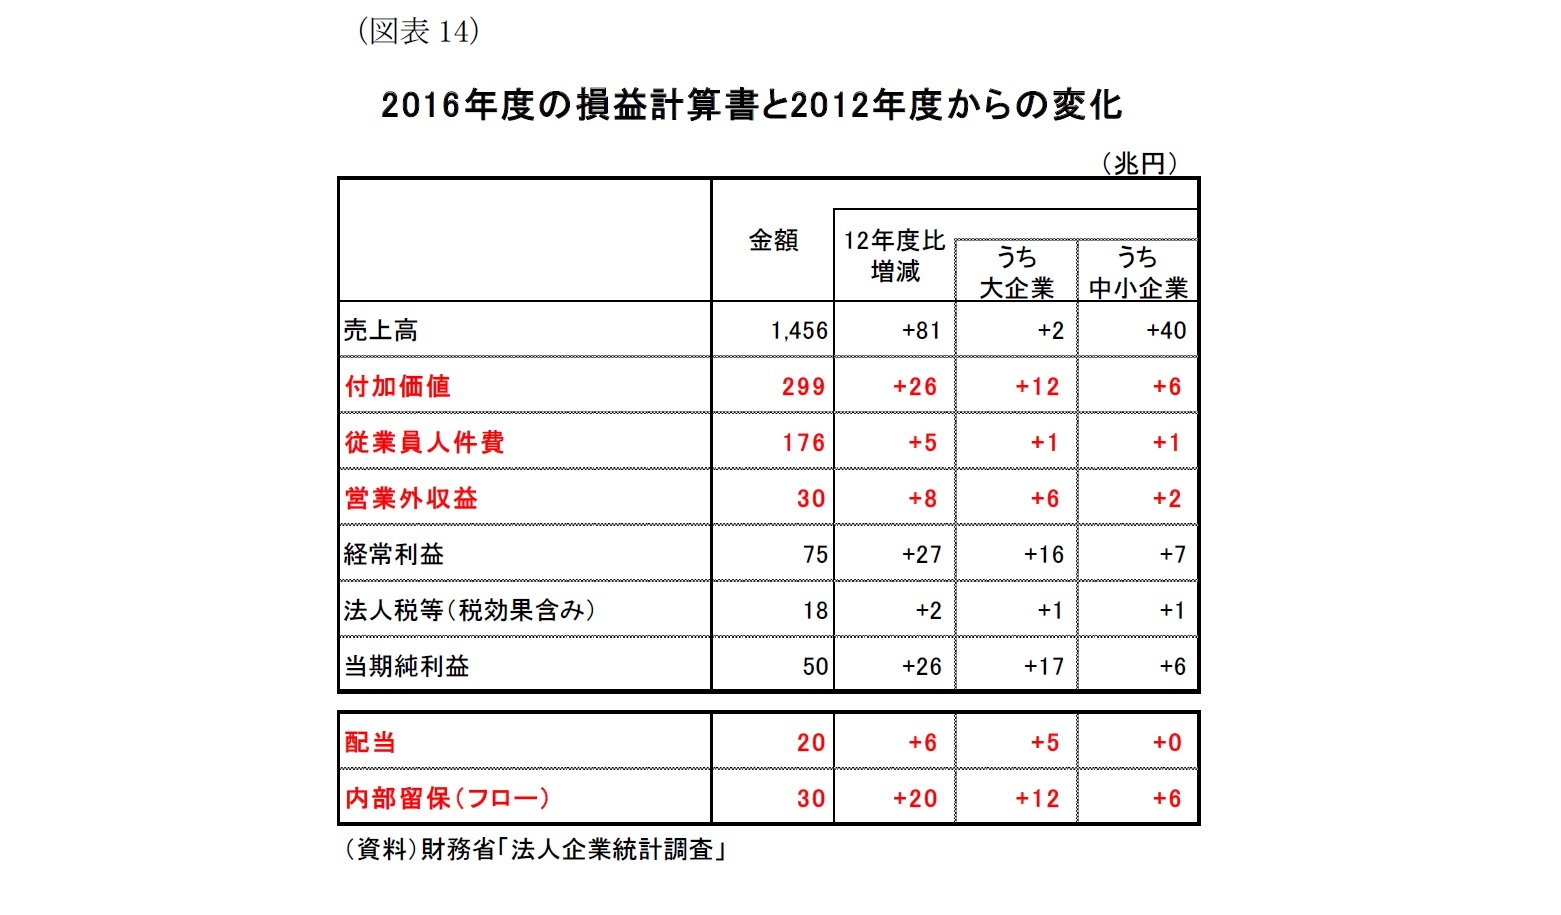 （図表14）2016年度の損益計算書と2012年度からの変化